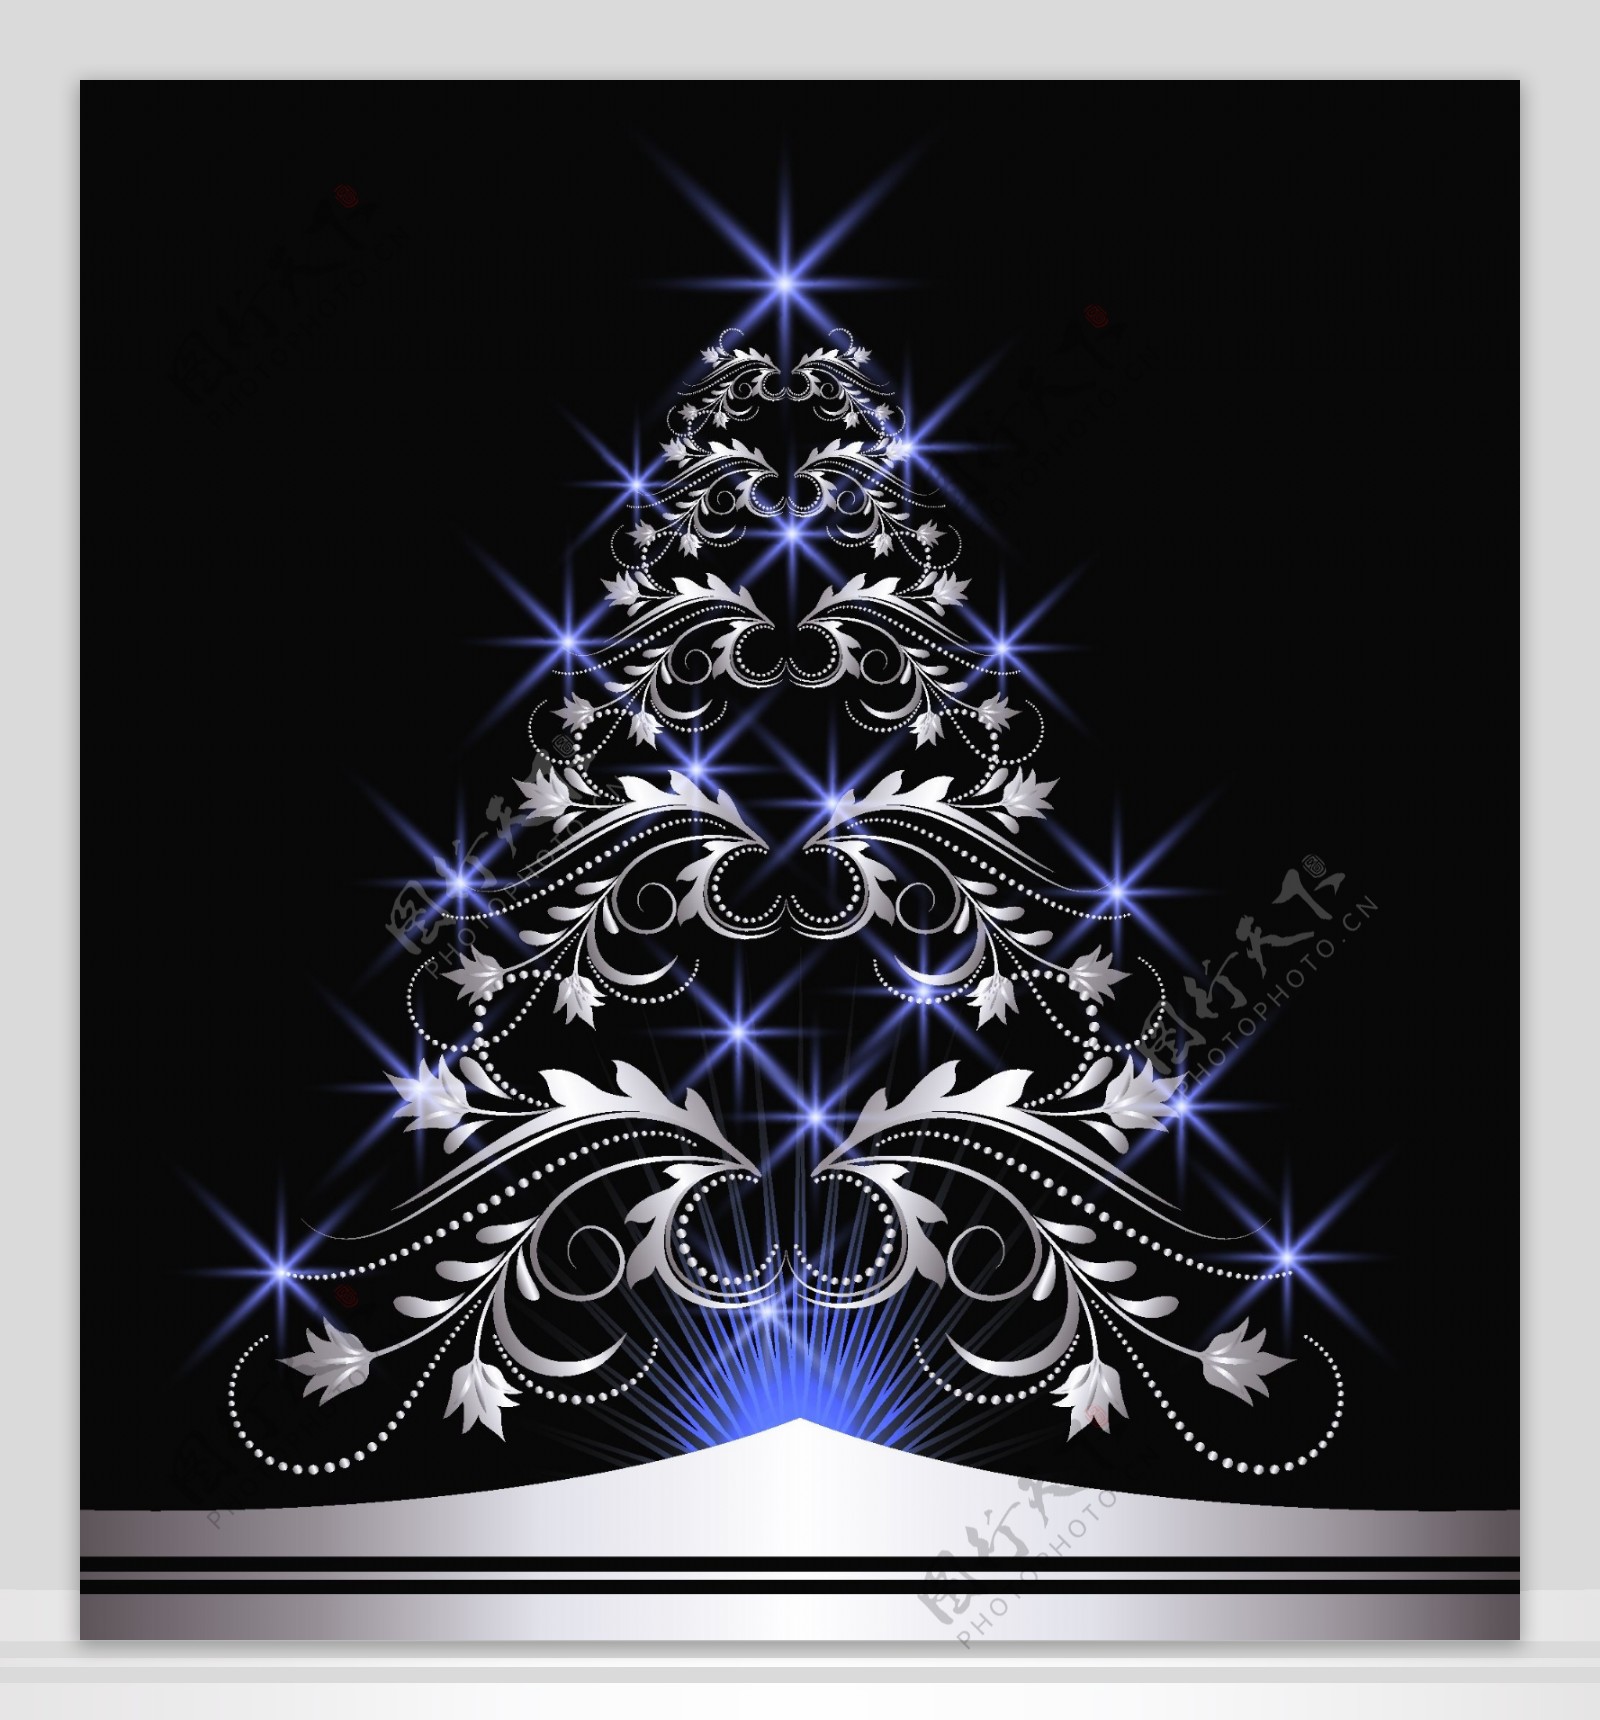 梦幻星光圣诞树创意设计矢量素材